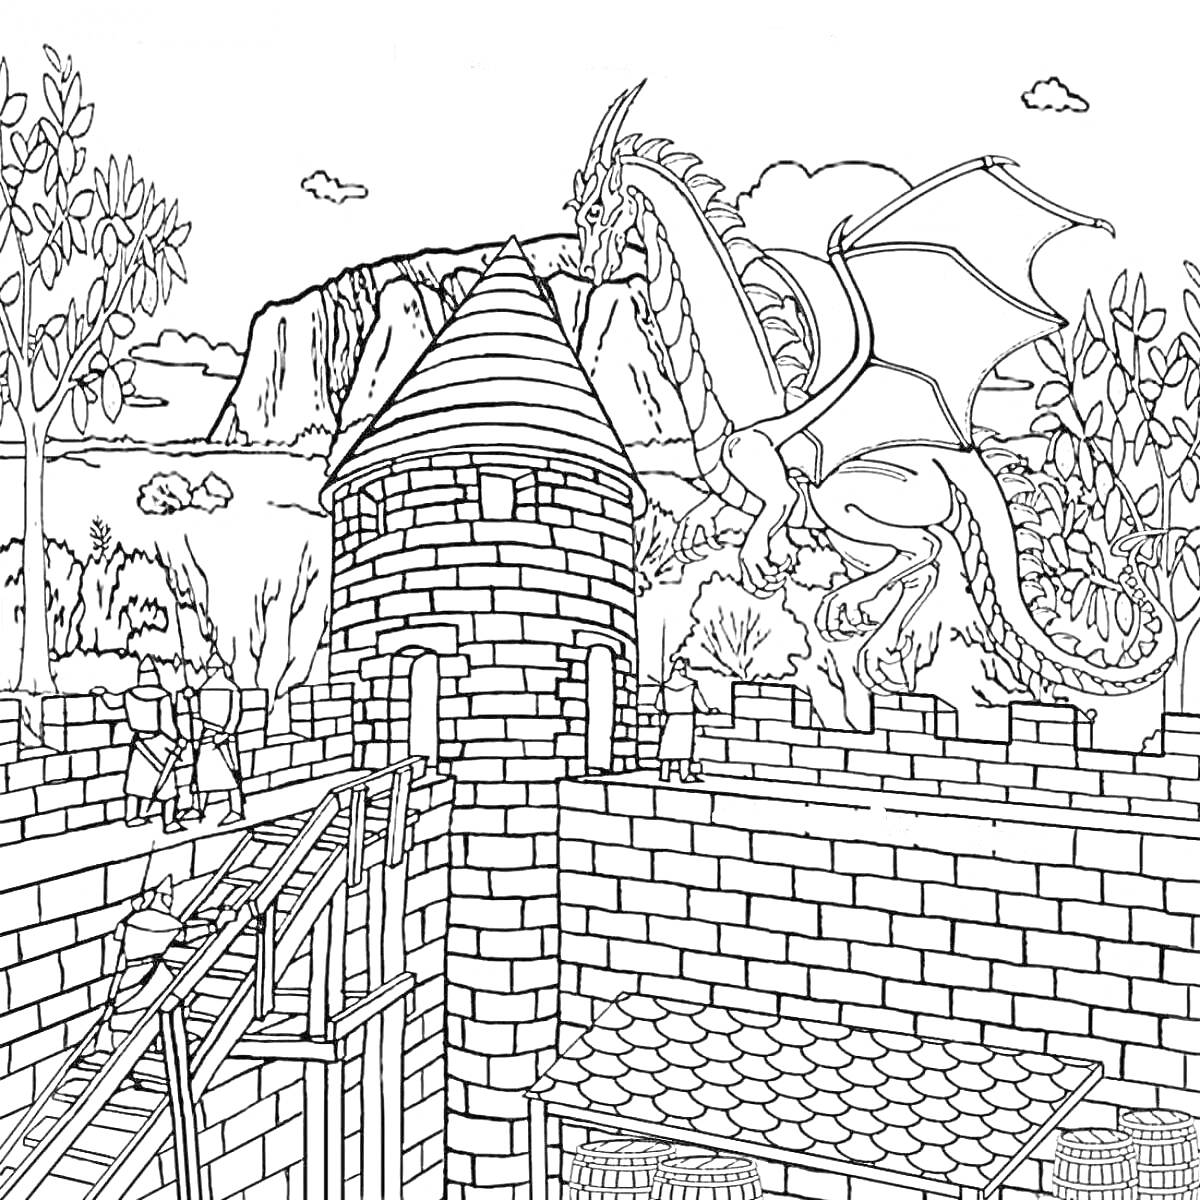 Раскраска Рыцарь на мосту, дракон над крепостной стеной, башня, стены замка, деревья и горы на заднем плане